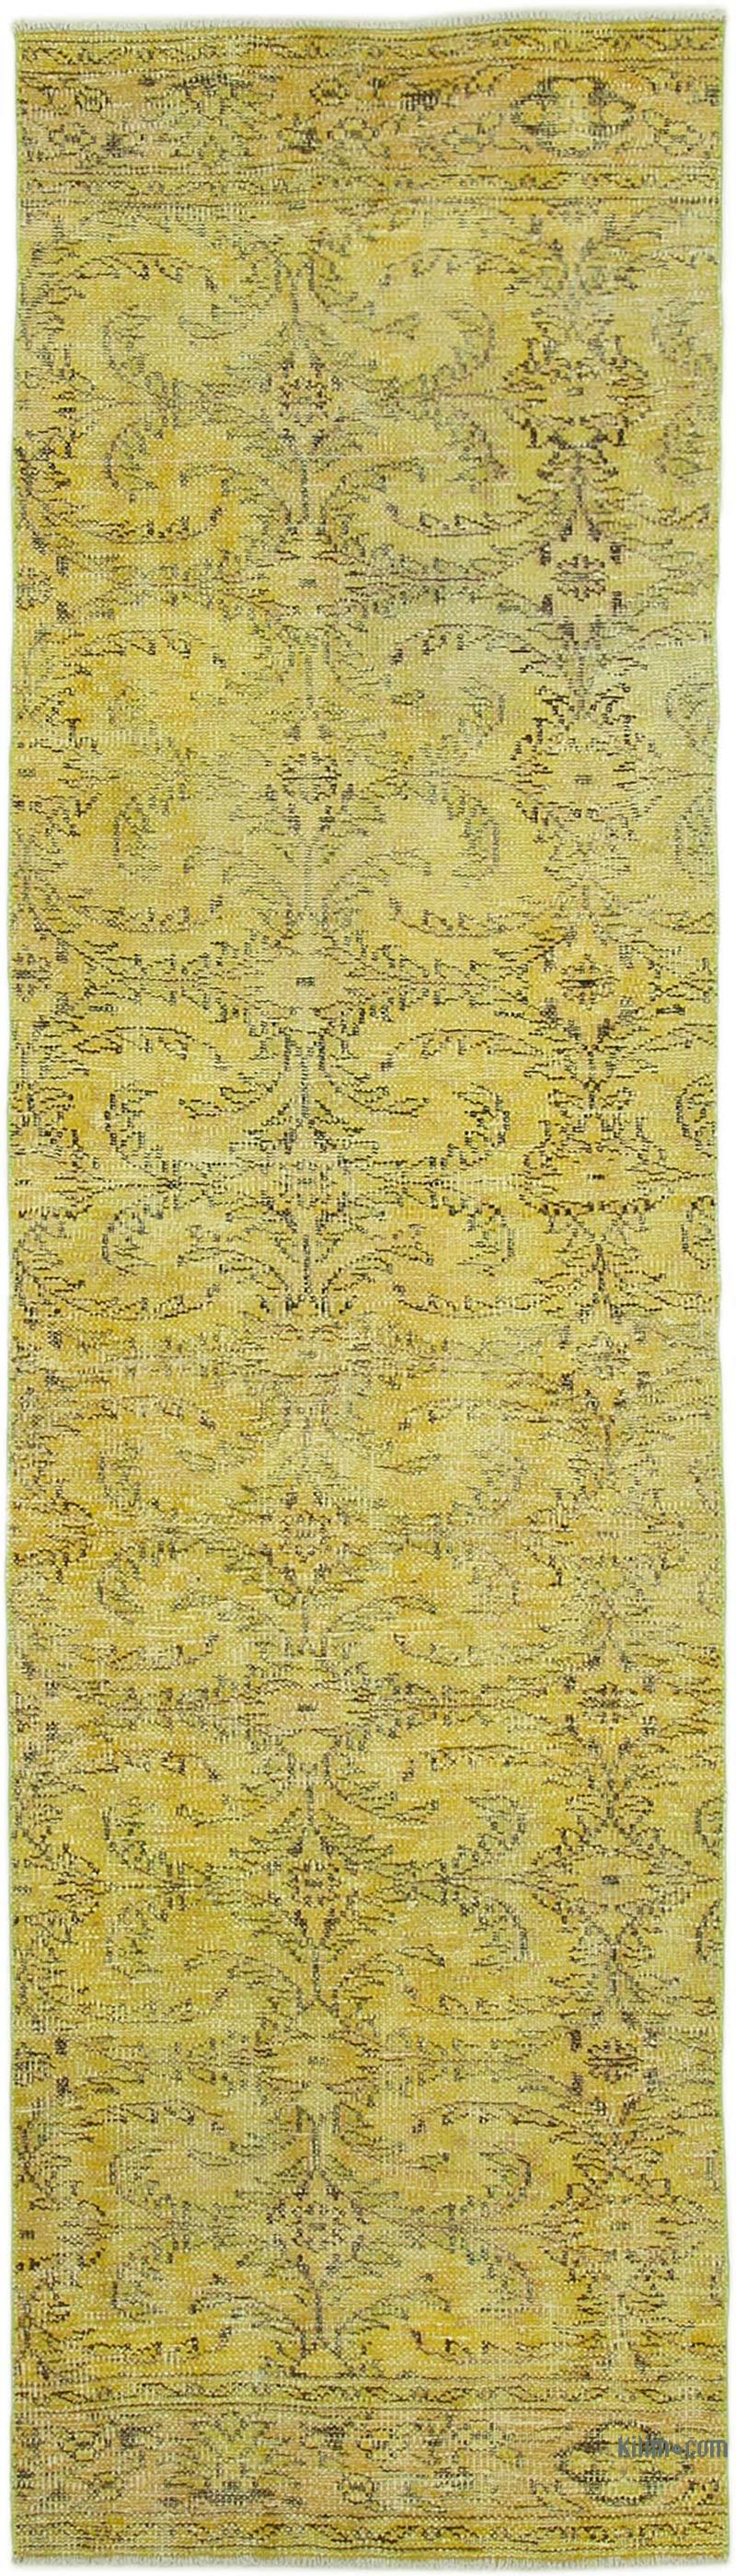 Sarı Boyalı El Dokuma Vintage Halı Yolluk - 81 cm x 290 cm - K0052186